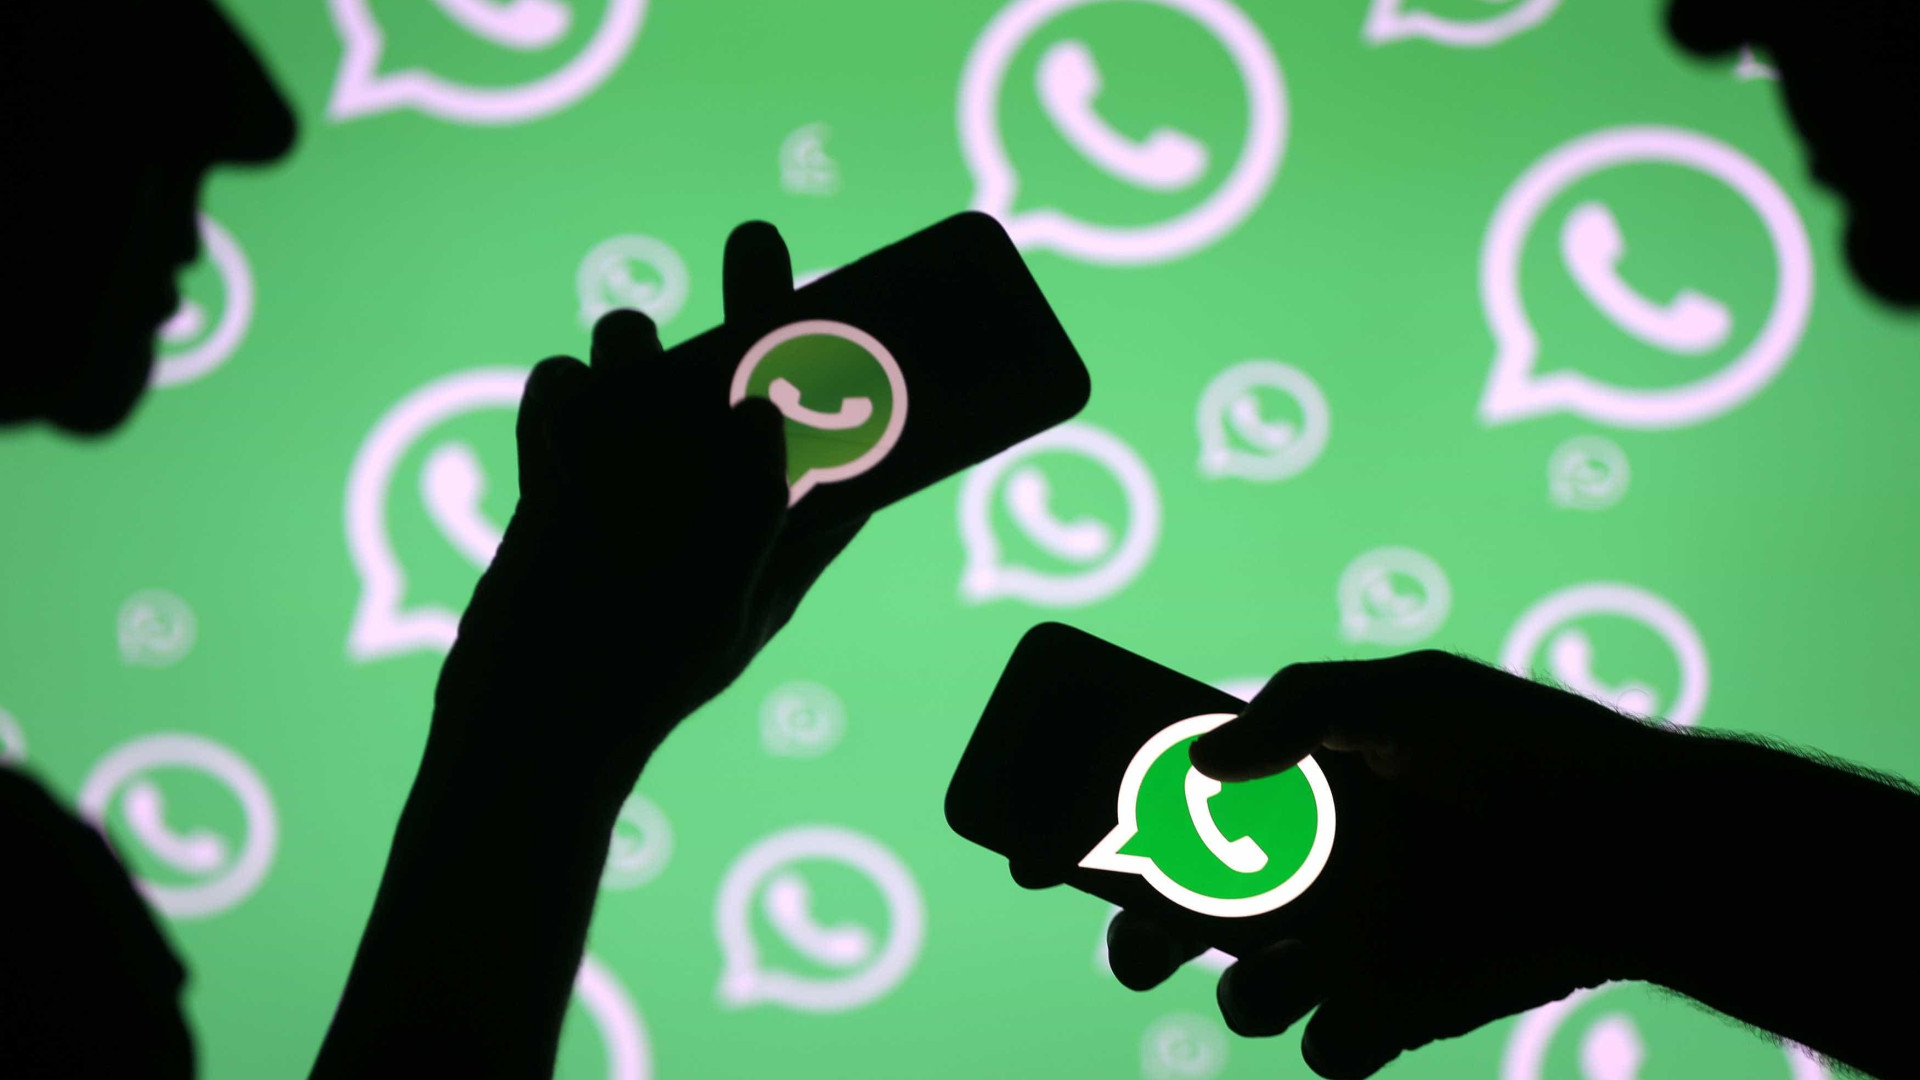 Discussão no WhatsApp acaba na Justiça e resulta em multa de R$ 2 mil